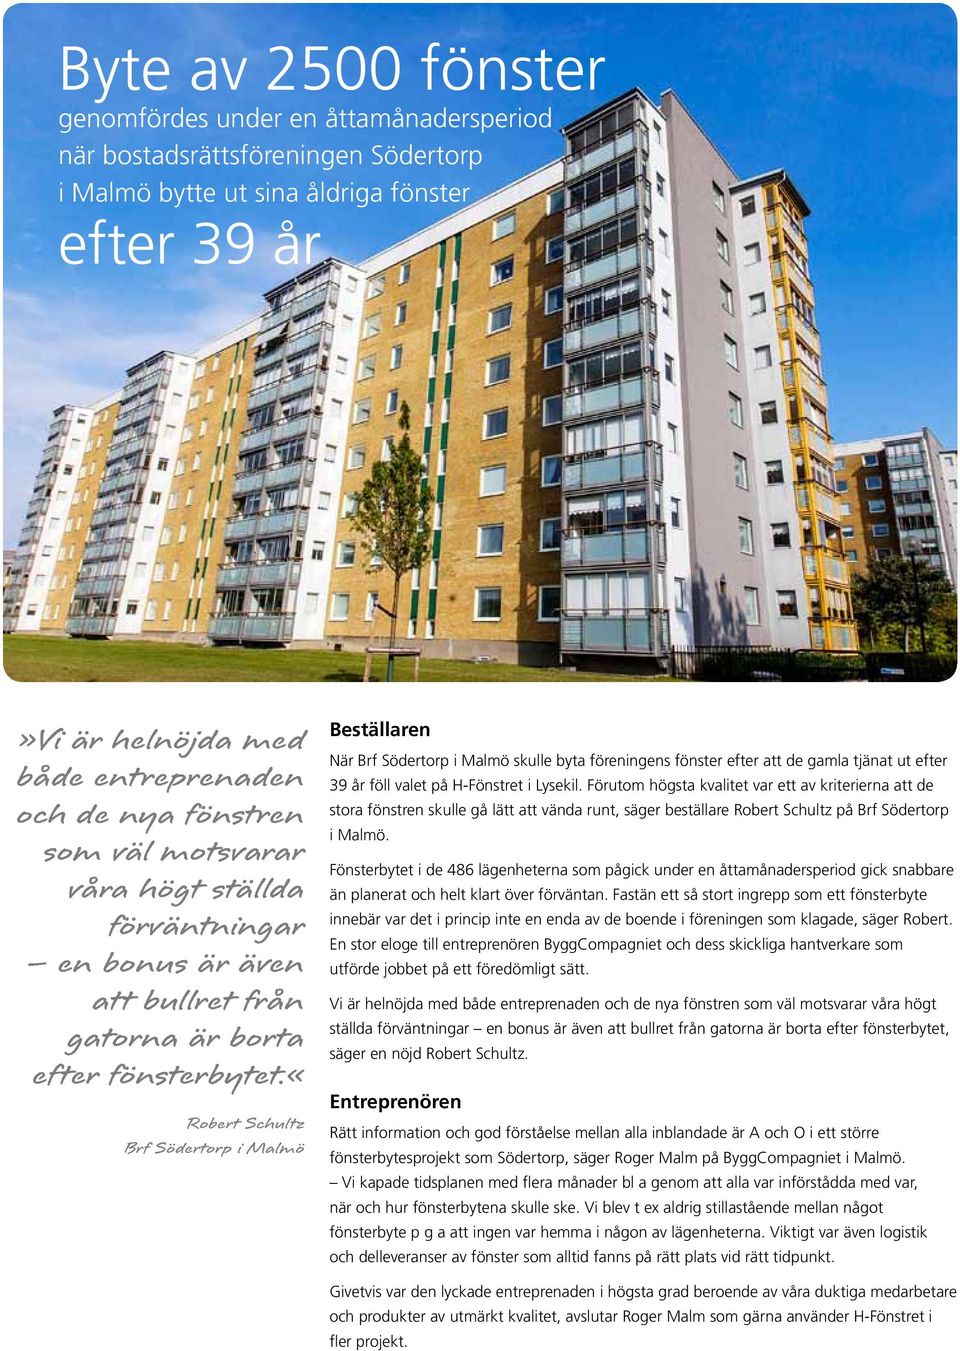 «robert Schultz Brf Södertorp i Malmö När Brf Södertorp i Malmö skulle byta föreningens fönster efter att de gamla tjänat ut efter 39 år föll valet på H-Fönstret i Lysekil.